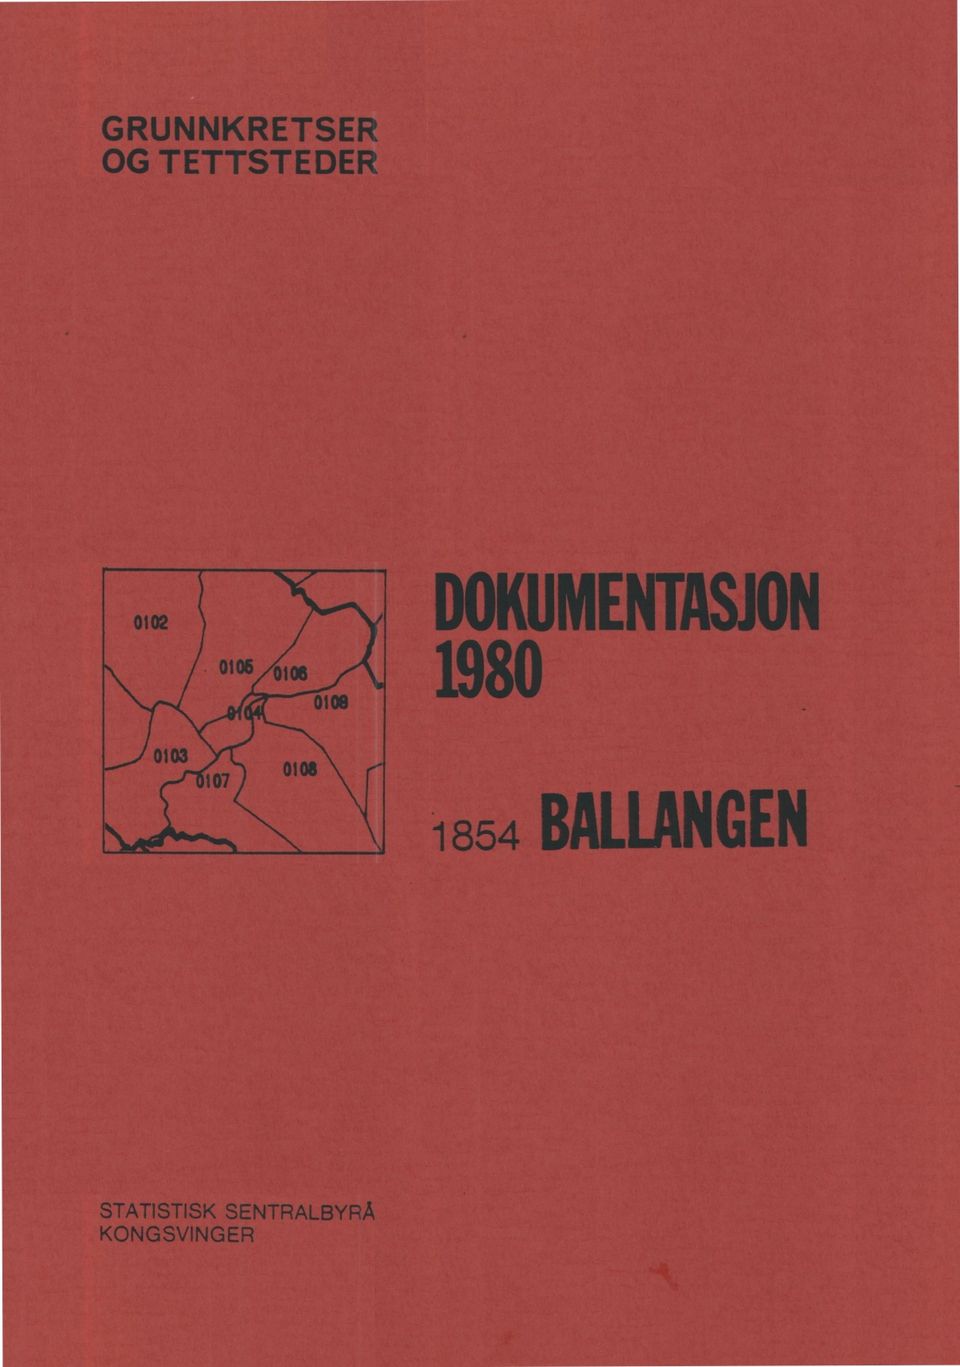 DOKUMENTASJON 1980 1854